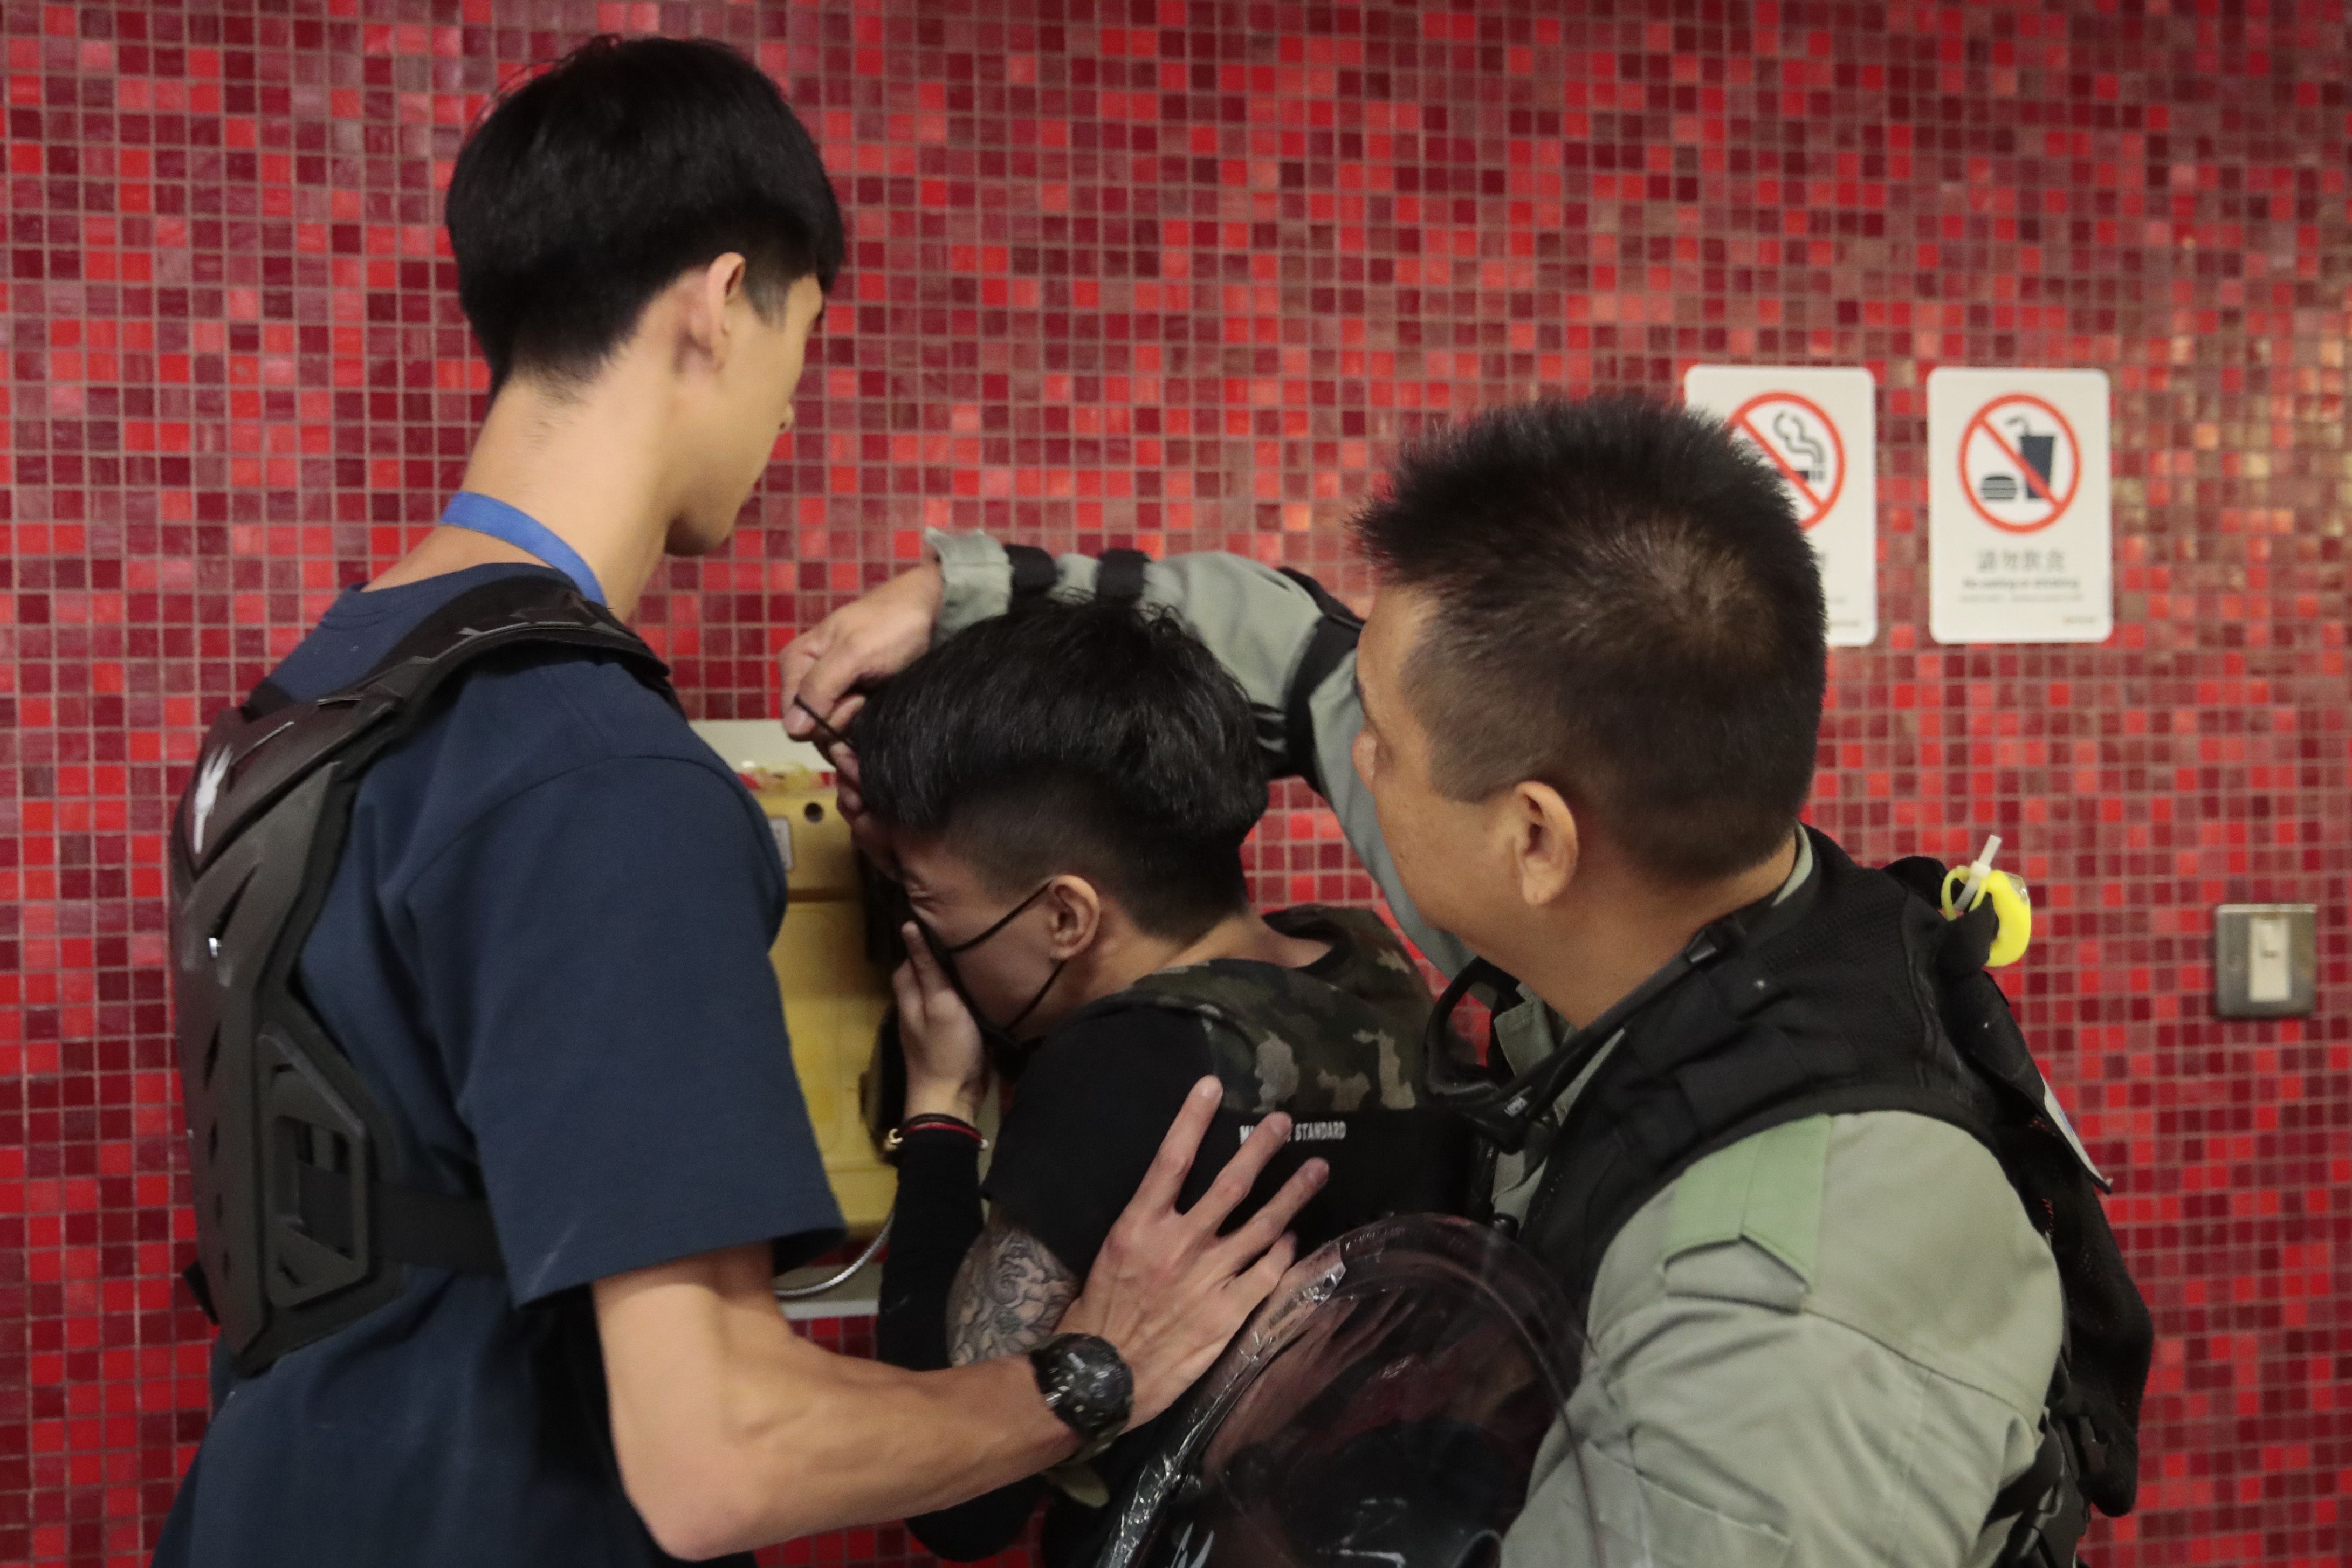 L apolicía retira la máscara de un manifestante después de que bloqueara la puerta de un tren en una estación de metro en Hong Kong, el lunes 2 de septiembre de 2019. (AP Foto/Jae C. Hong)